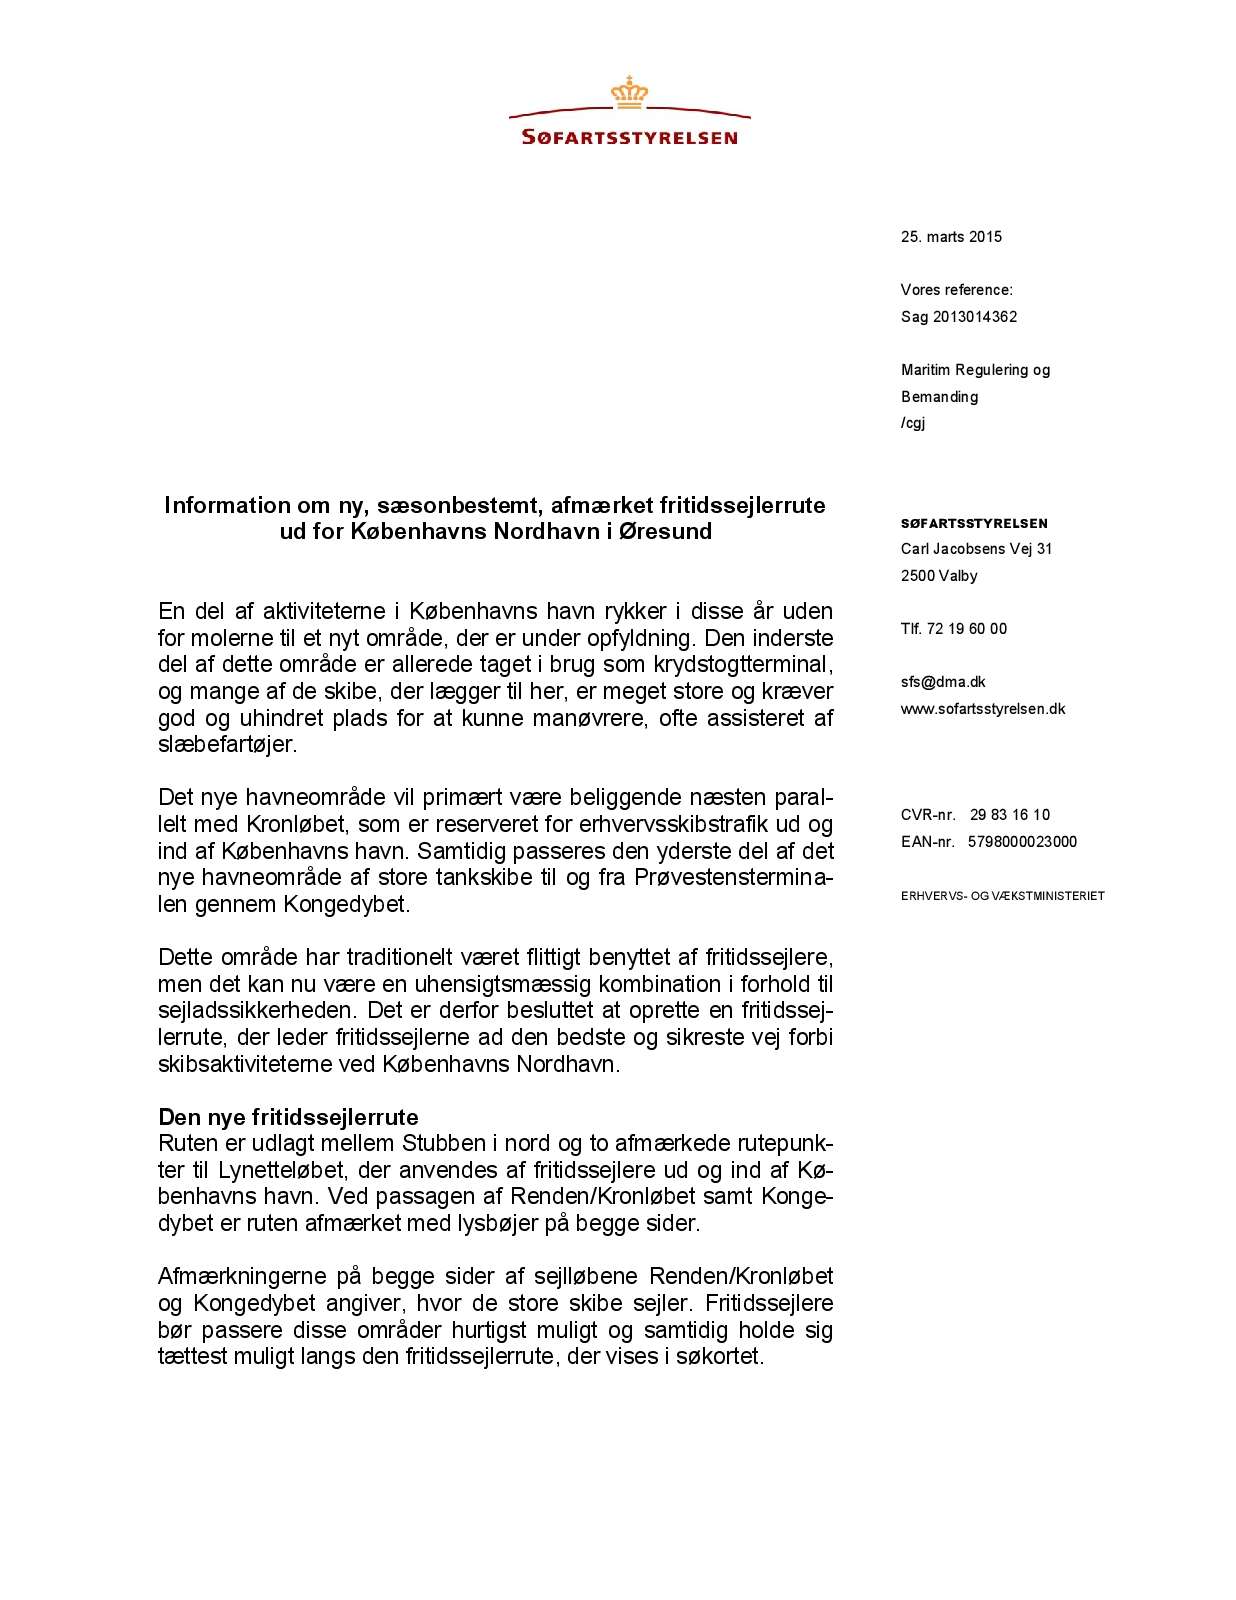 Søfartsstyrelsens info om fritidssejlerrute ud for Københavns havn gældende fra den 1  april 2015 (Find mere information om den nye fritidssejlerrute)